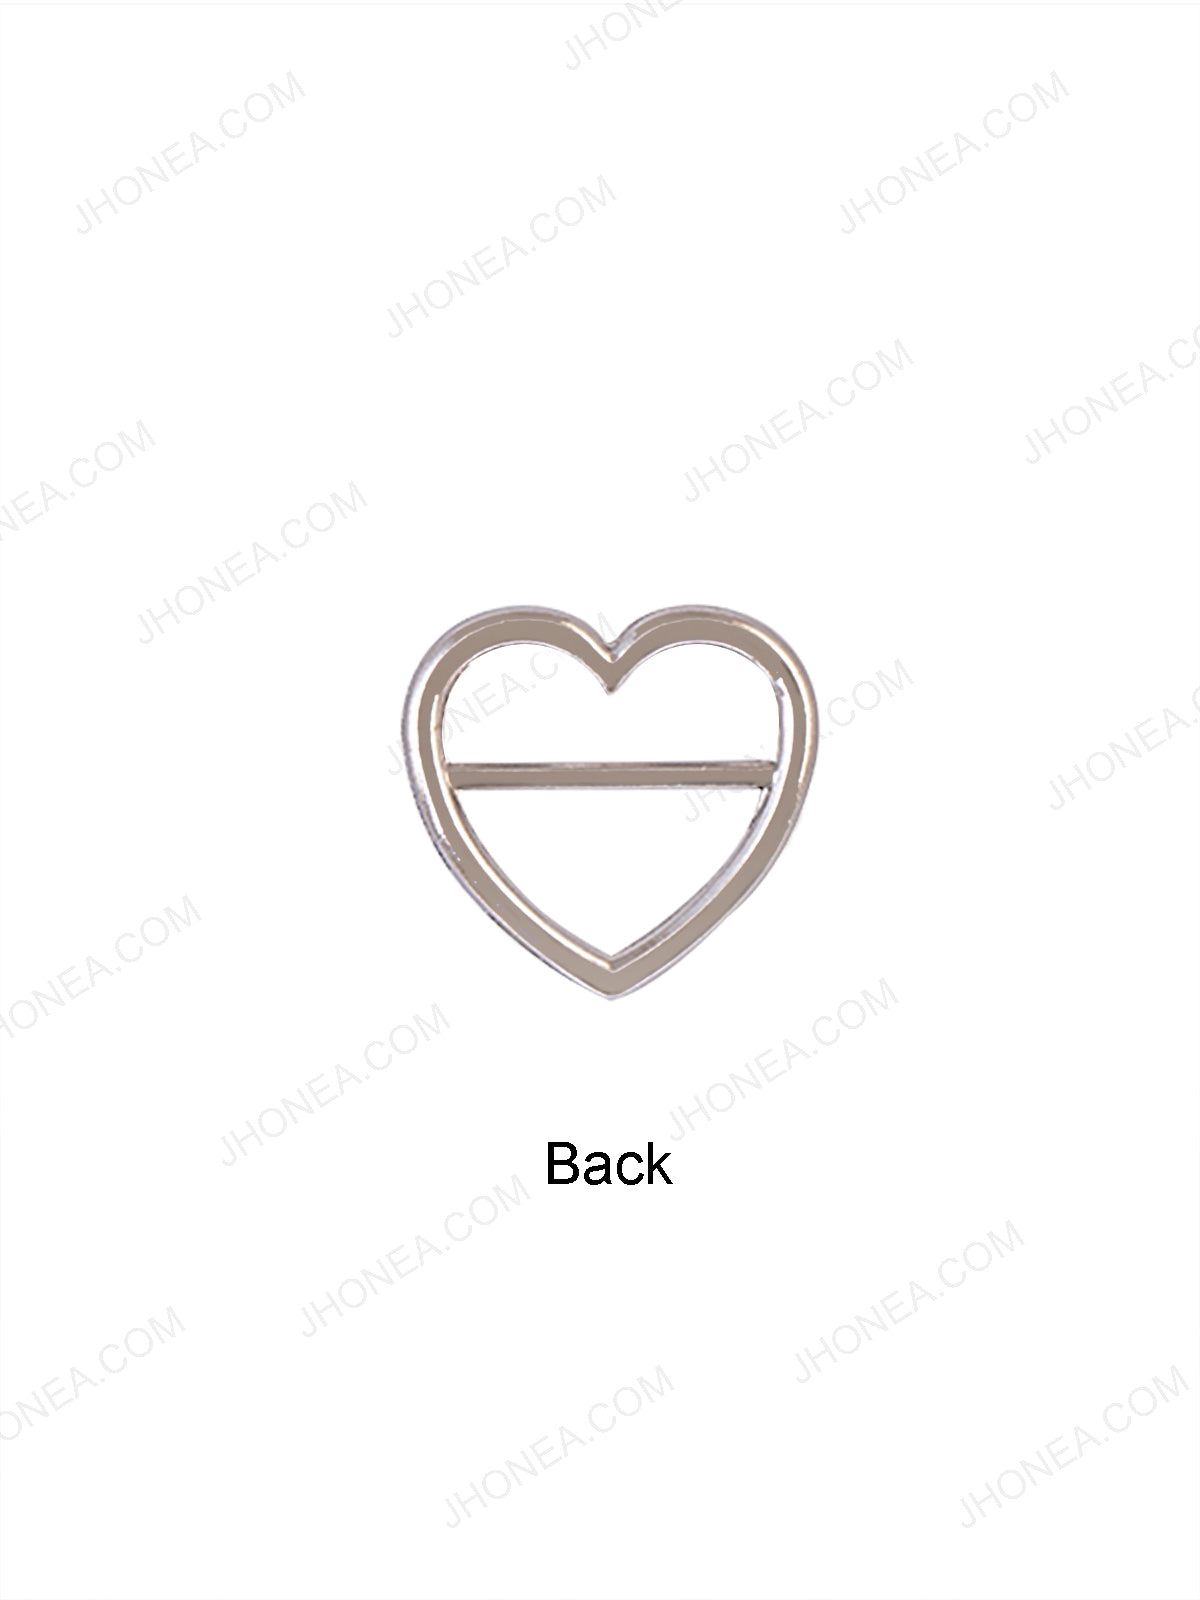 Rivil-Civil Shiny Silver Small Heart Shape Strap Buckle